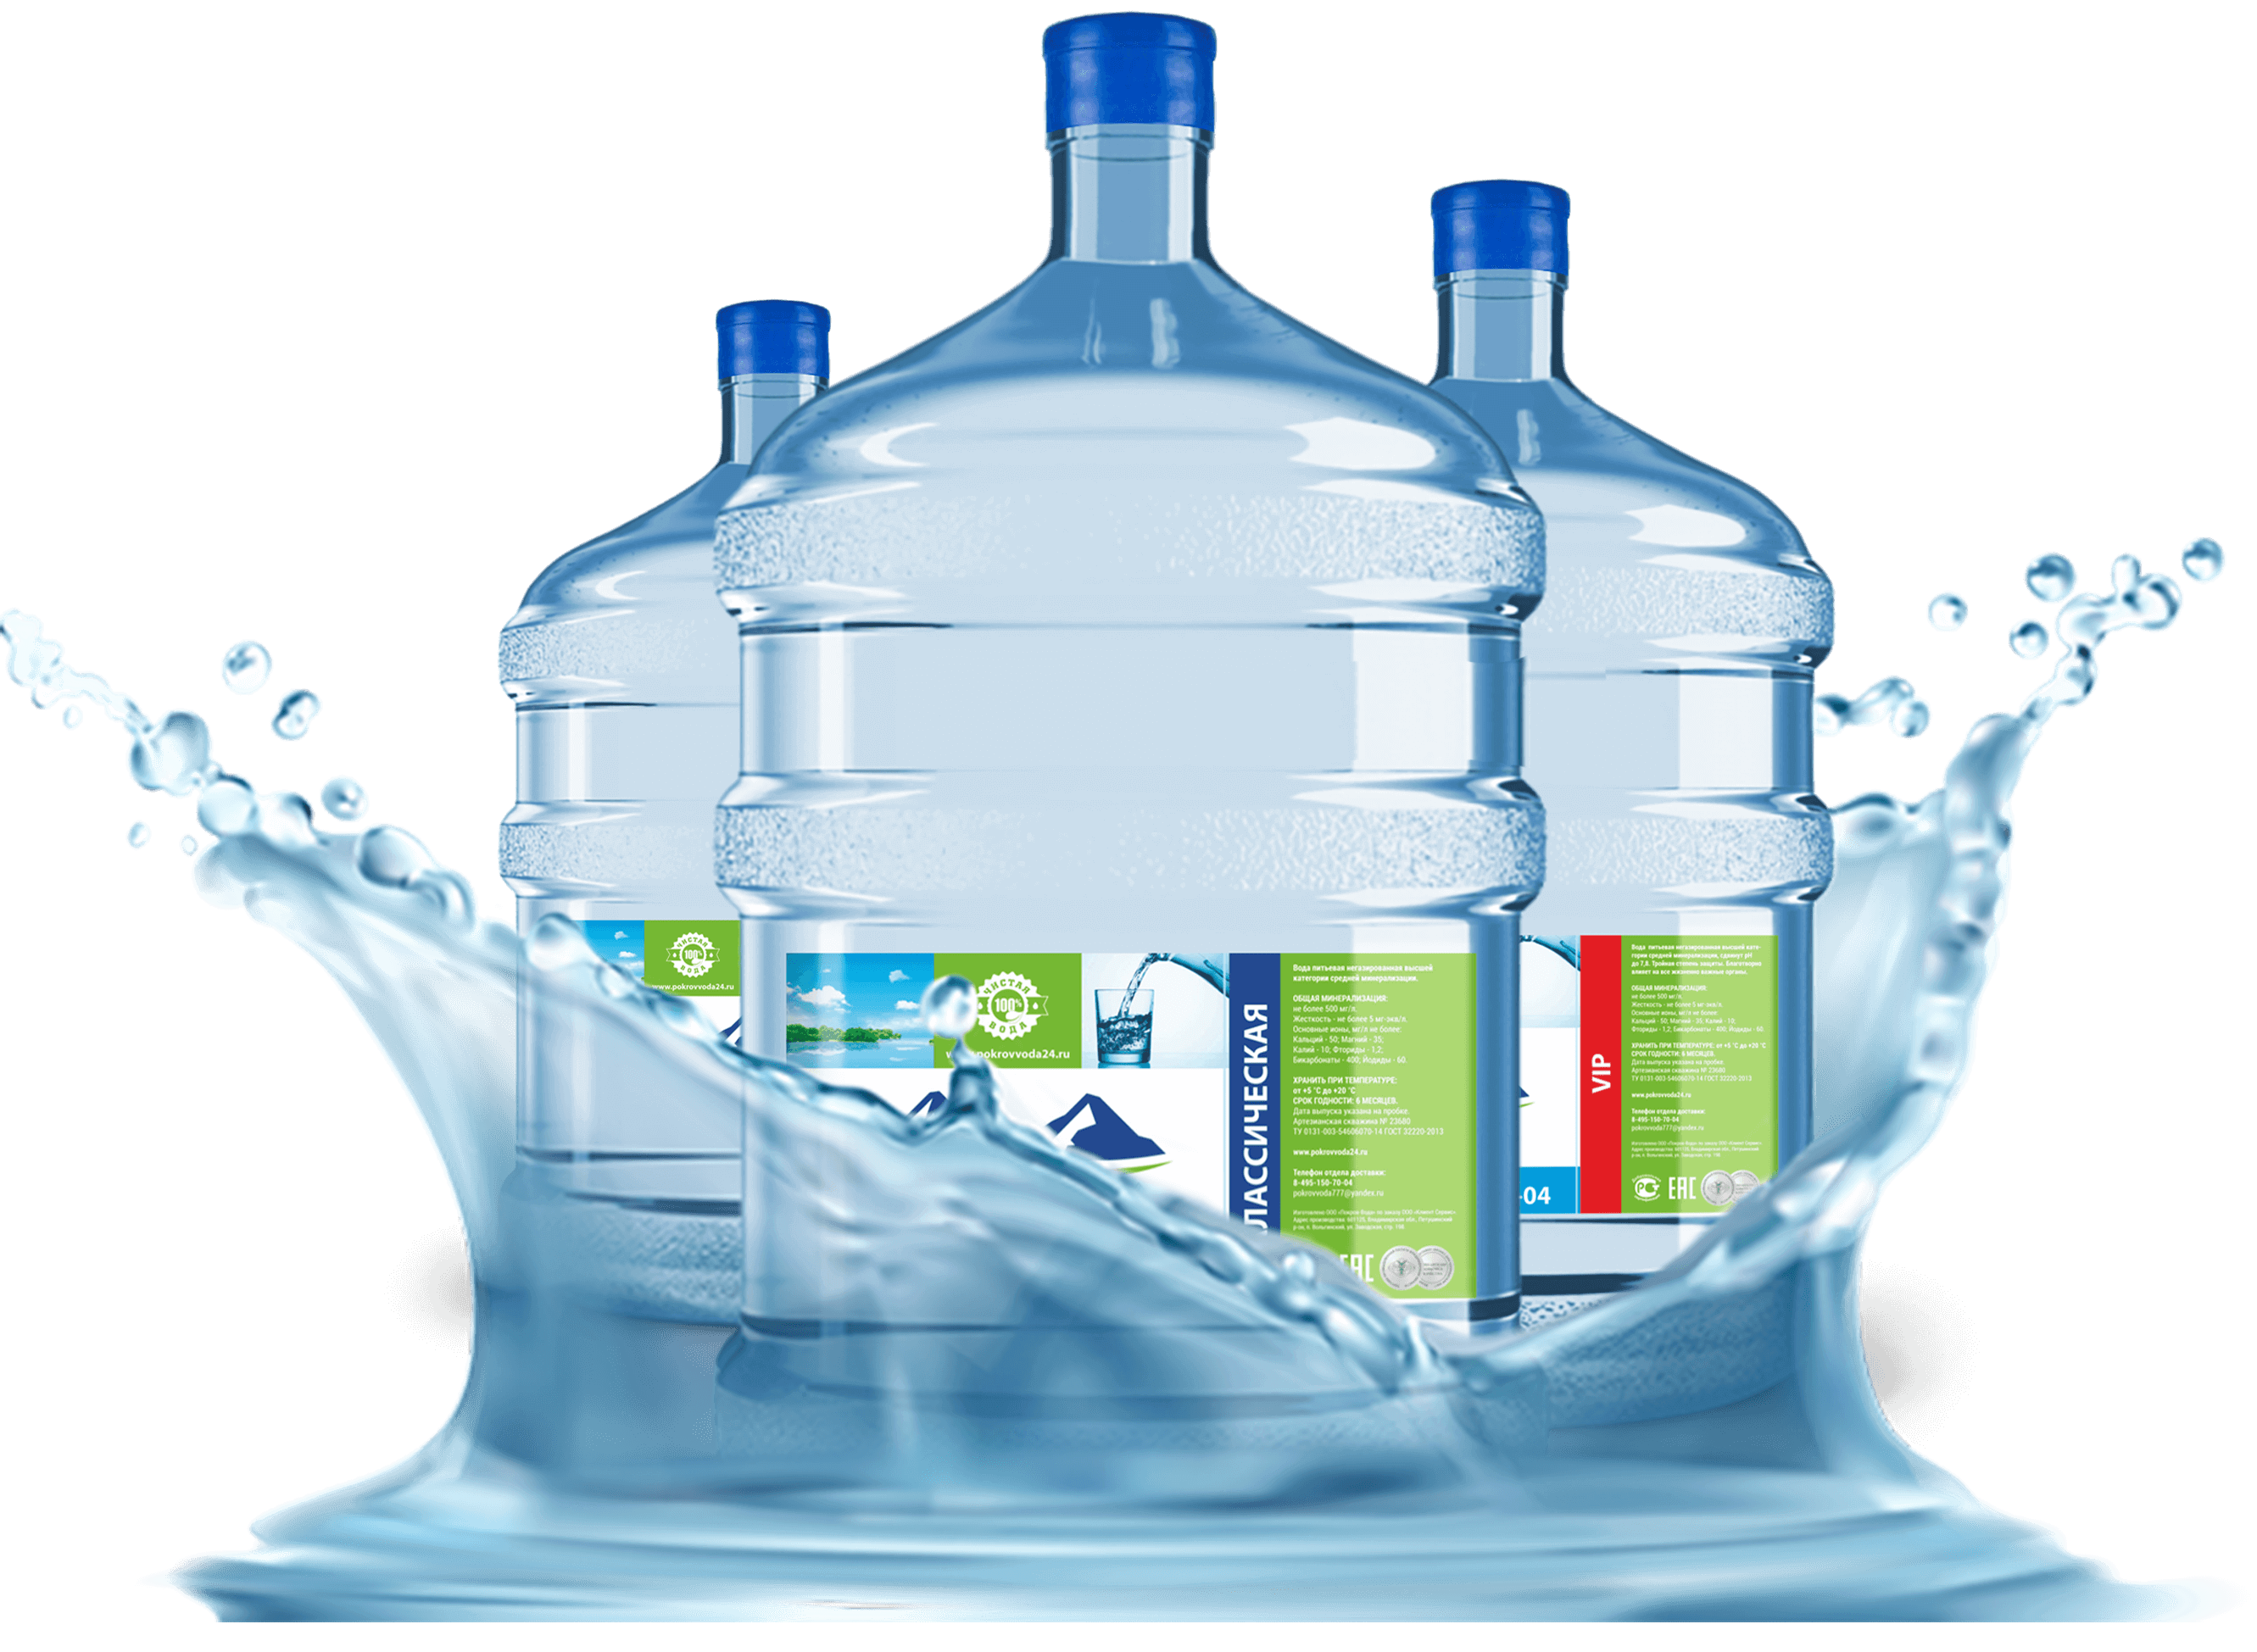 Доставка воды. Бутилированная вода. Вода в бутылях. Вода питьевая бутилированная. Бутилированная вода реклама.